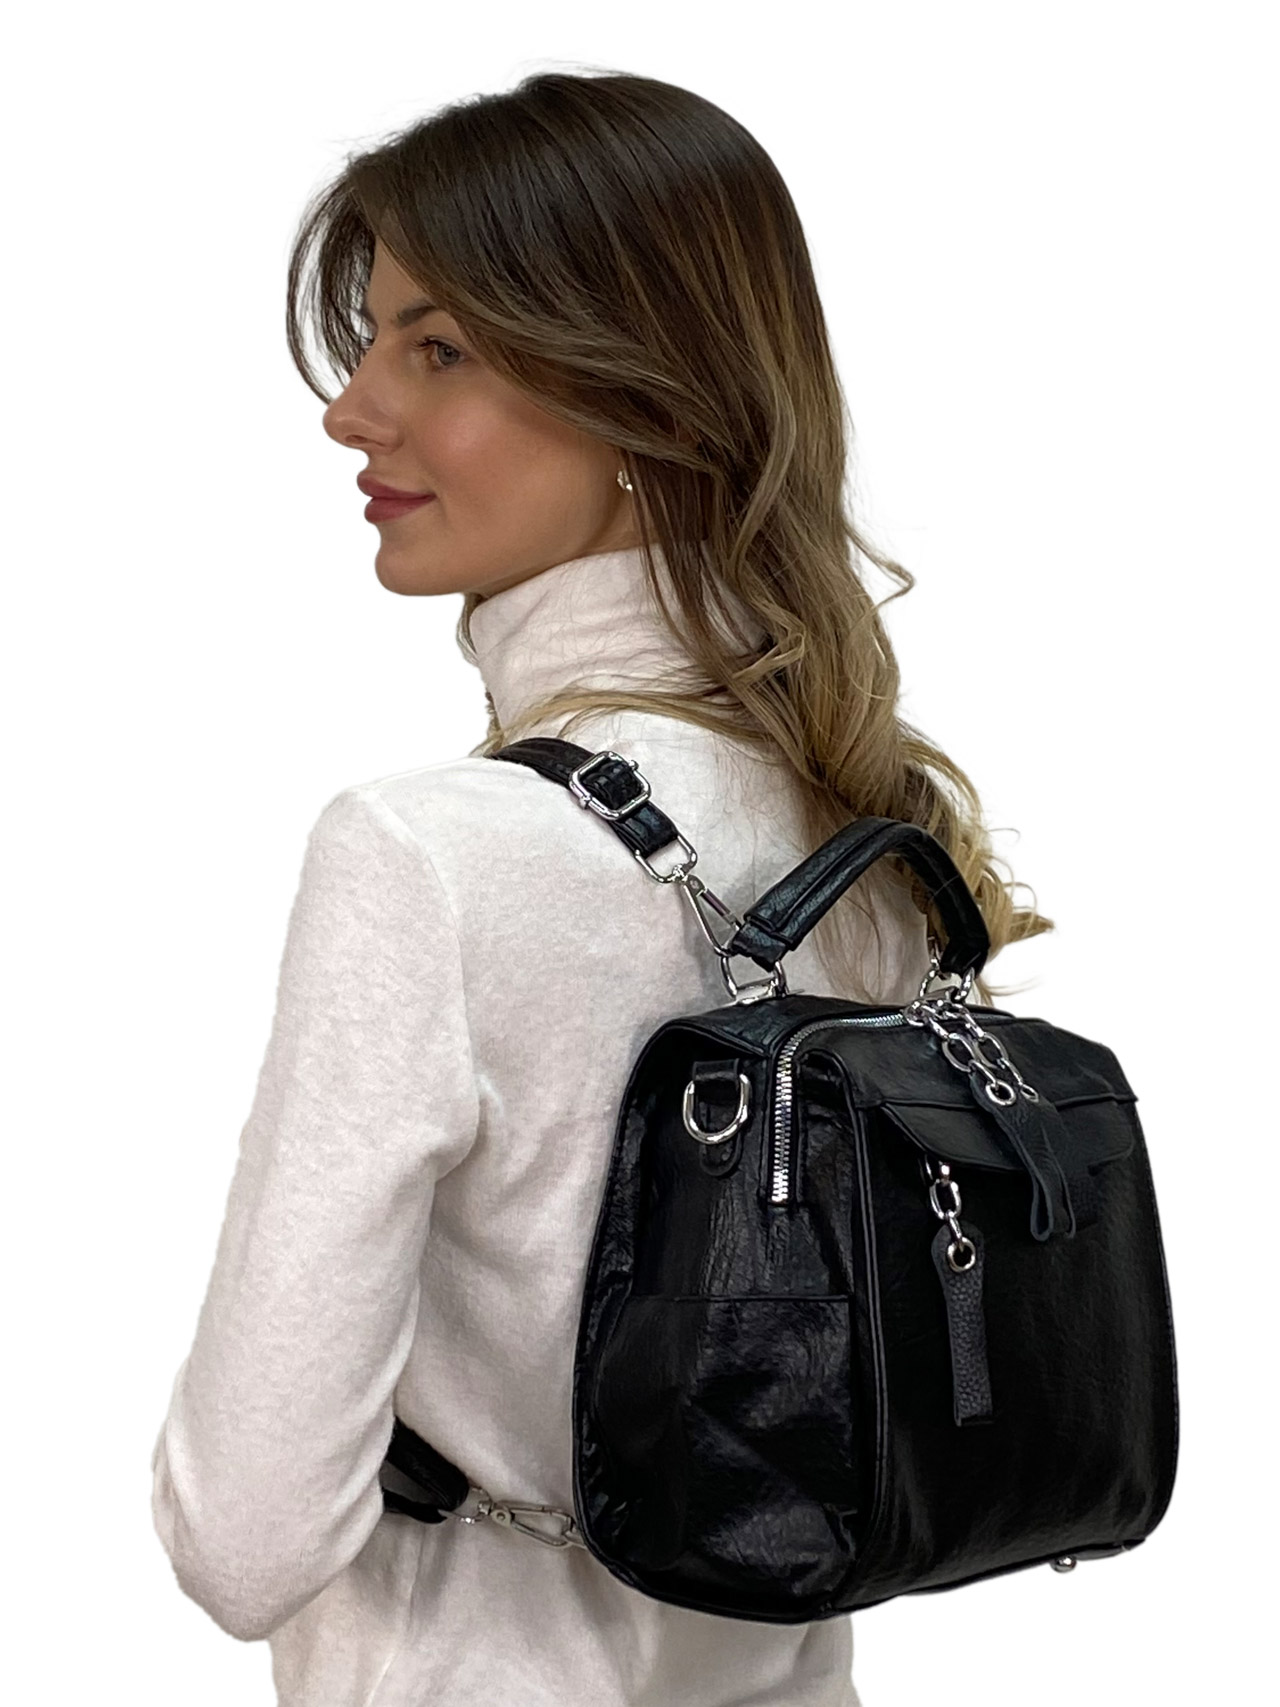 Женская сумка-рюкзак трансформер из искусственной кожи, цвет черный